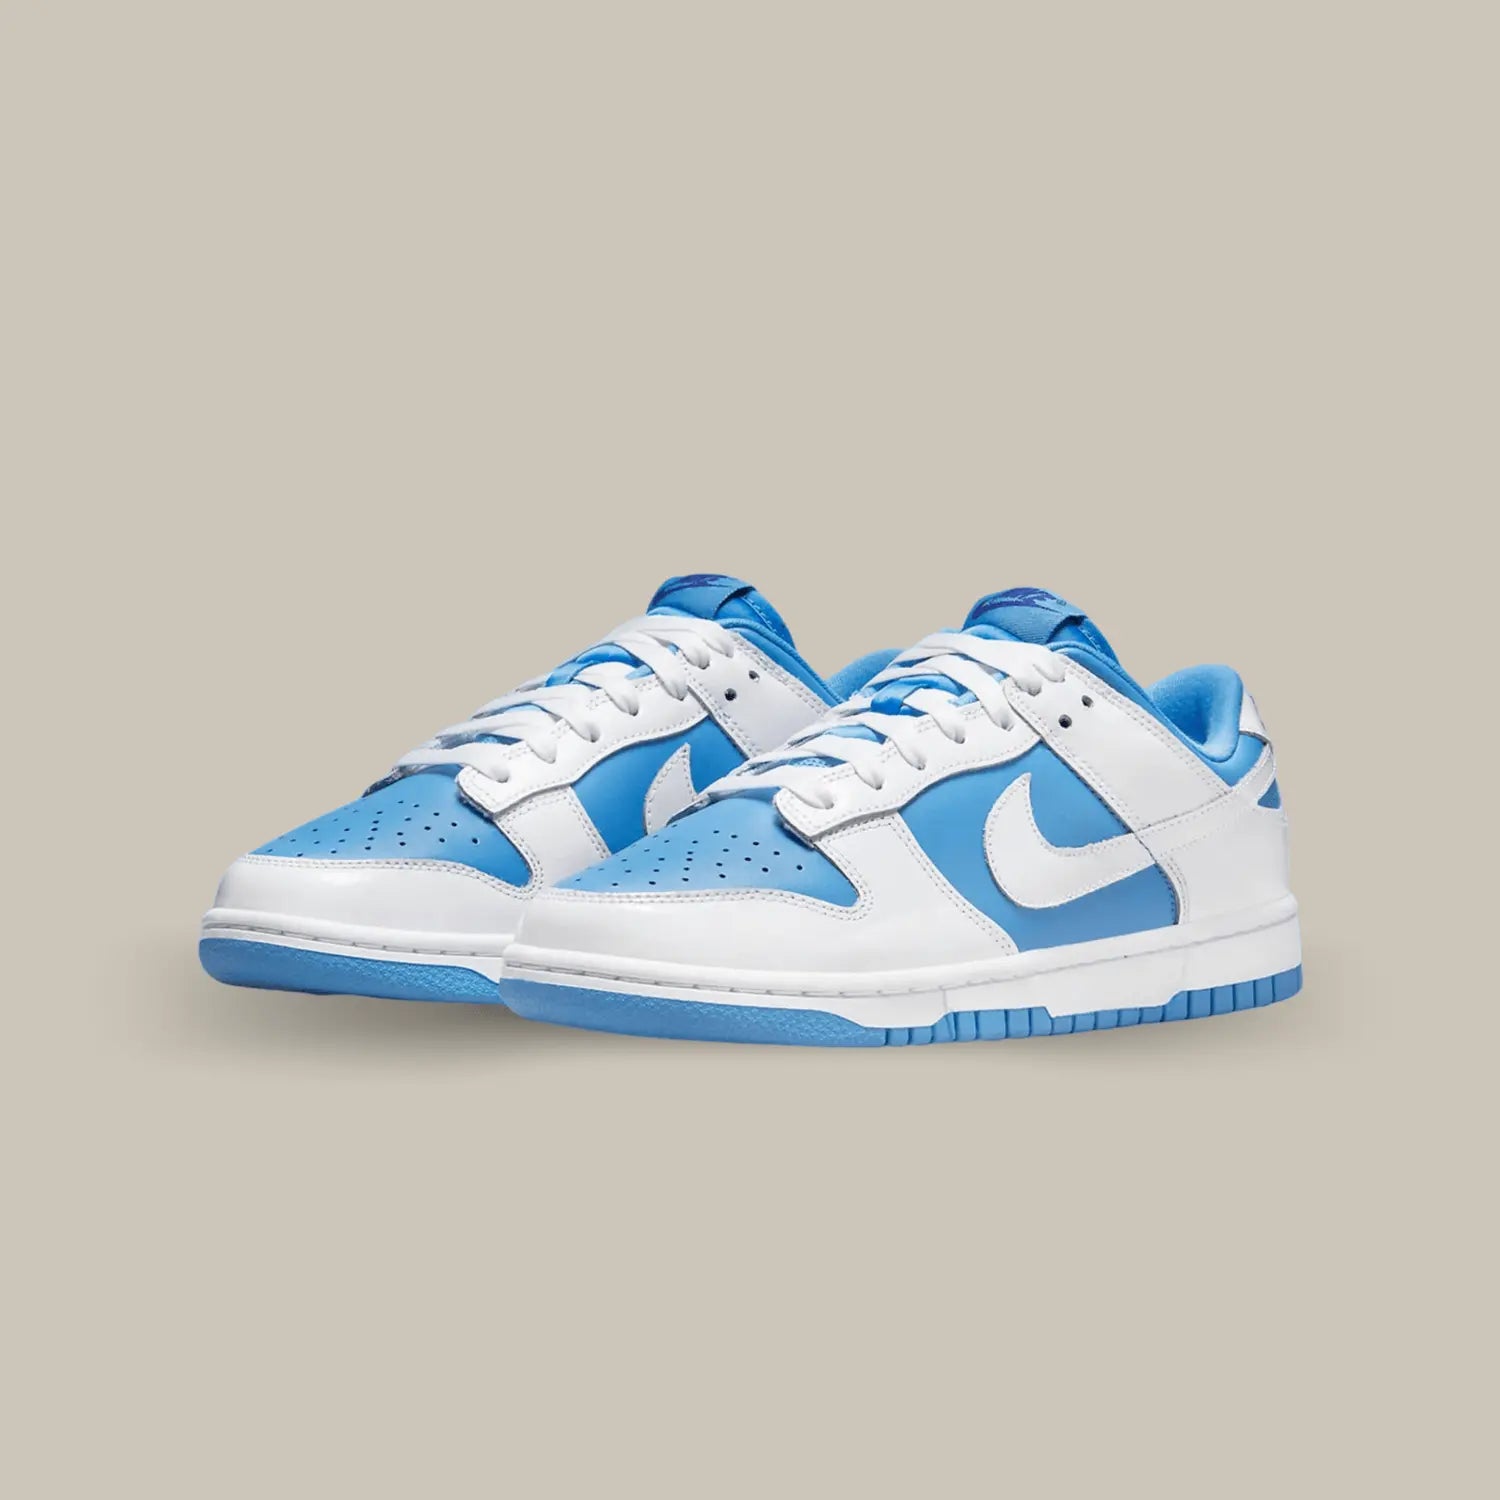 La Nike Dunk Low Reverse UNC puise son inspiration dans le monde universitaire américain. Elle affiche une base en cuir bleu ciel accompagnée de superpositions en cuir blanc, les deux couleurs représentantes de UNC, l’Université de Caroline du Nord à Chapel Hill.